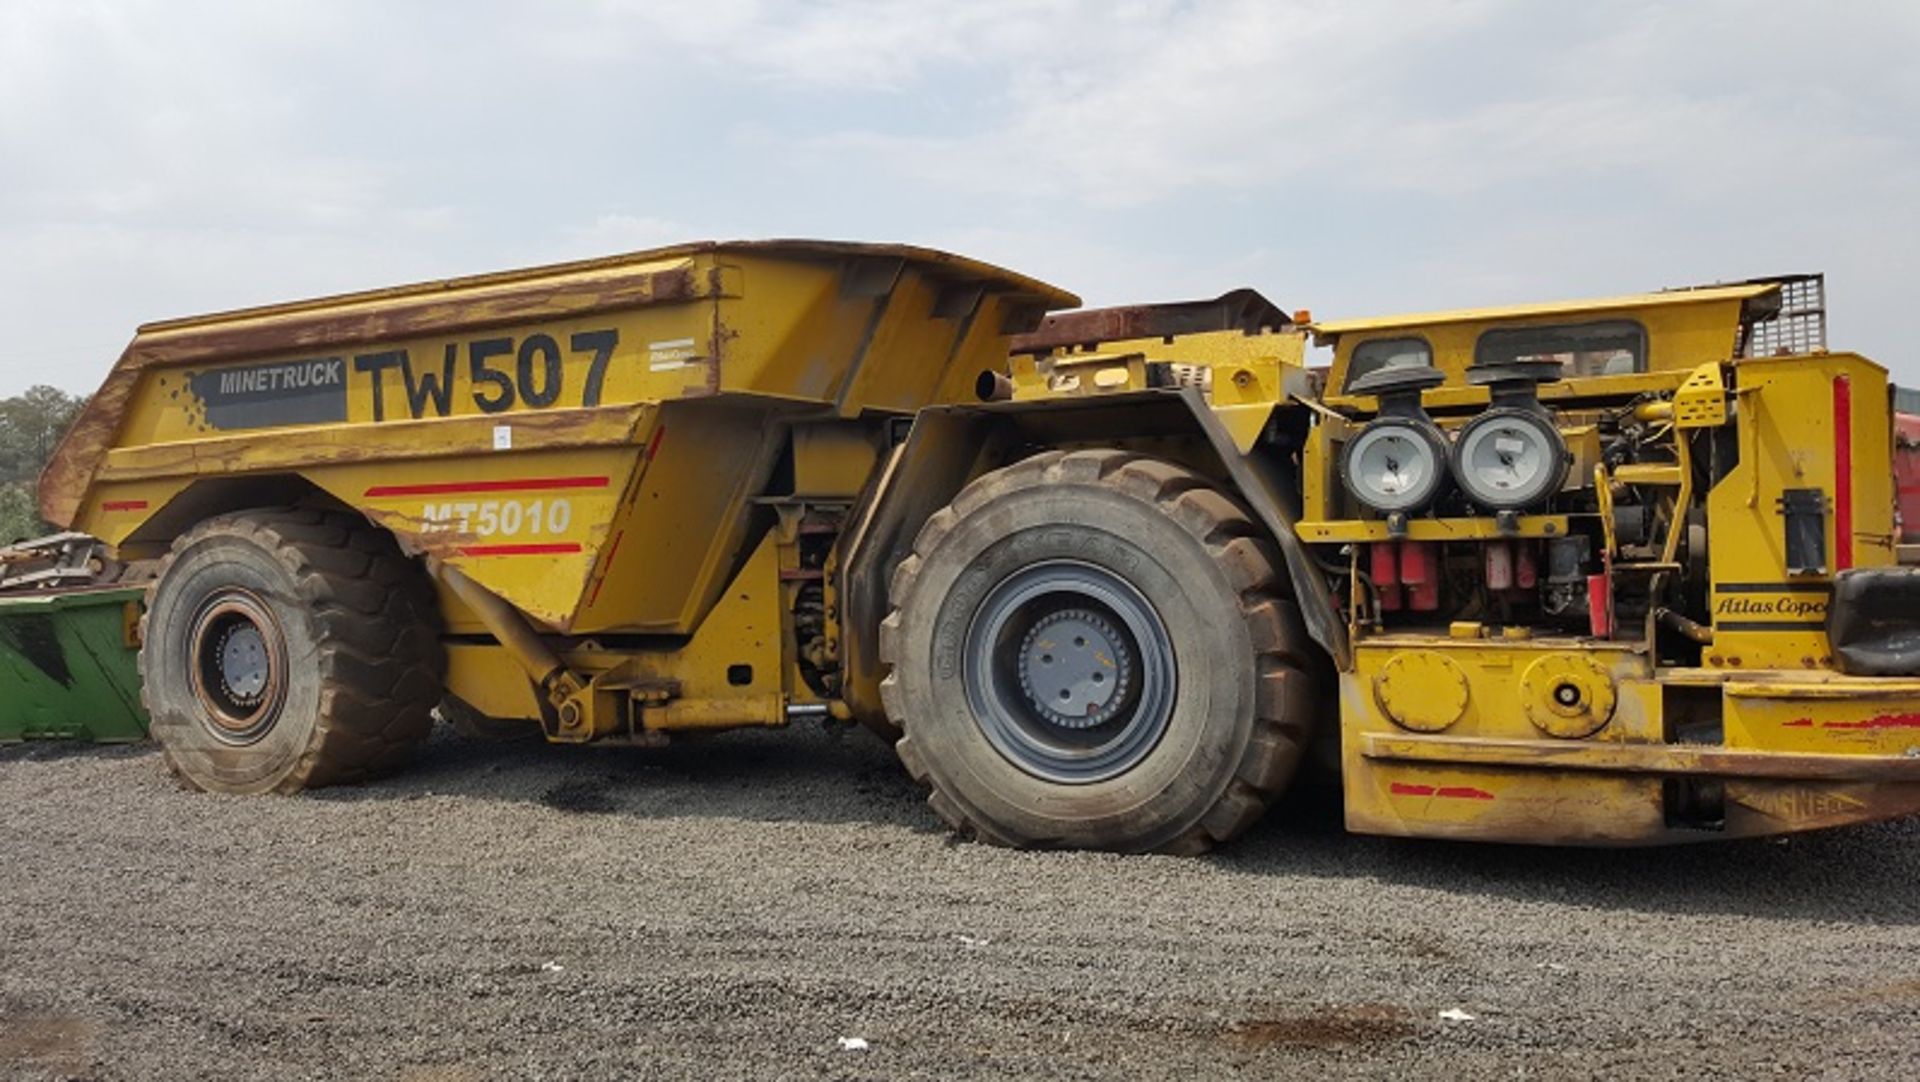 Atlas Copco Wagner MT5010 Underground Dump Truck (TW507) - Image 2 of 4